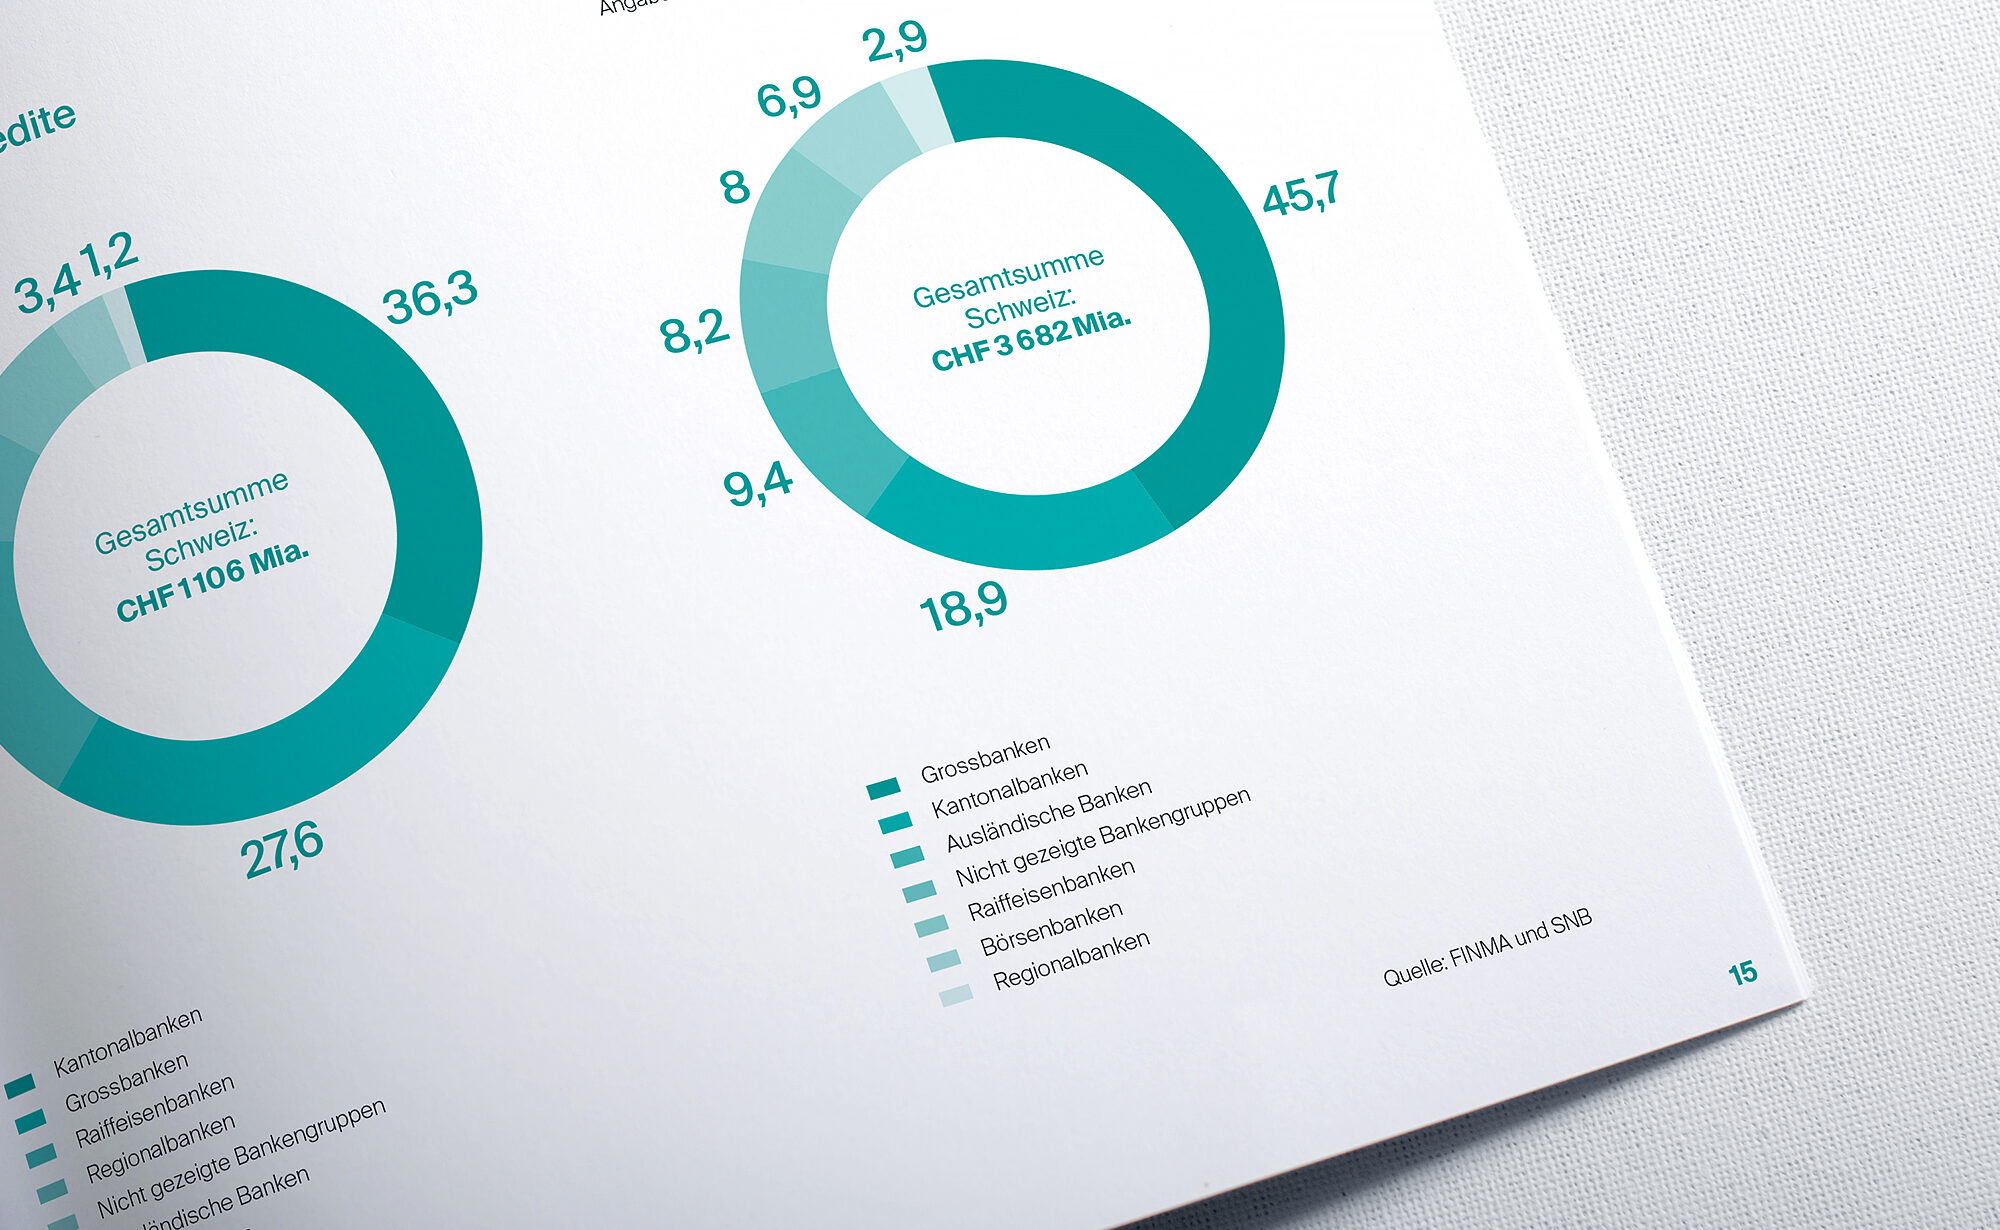 Key figures Seite, Geschäftsbericht von Verband Schweizer Regionalbanken